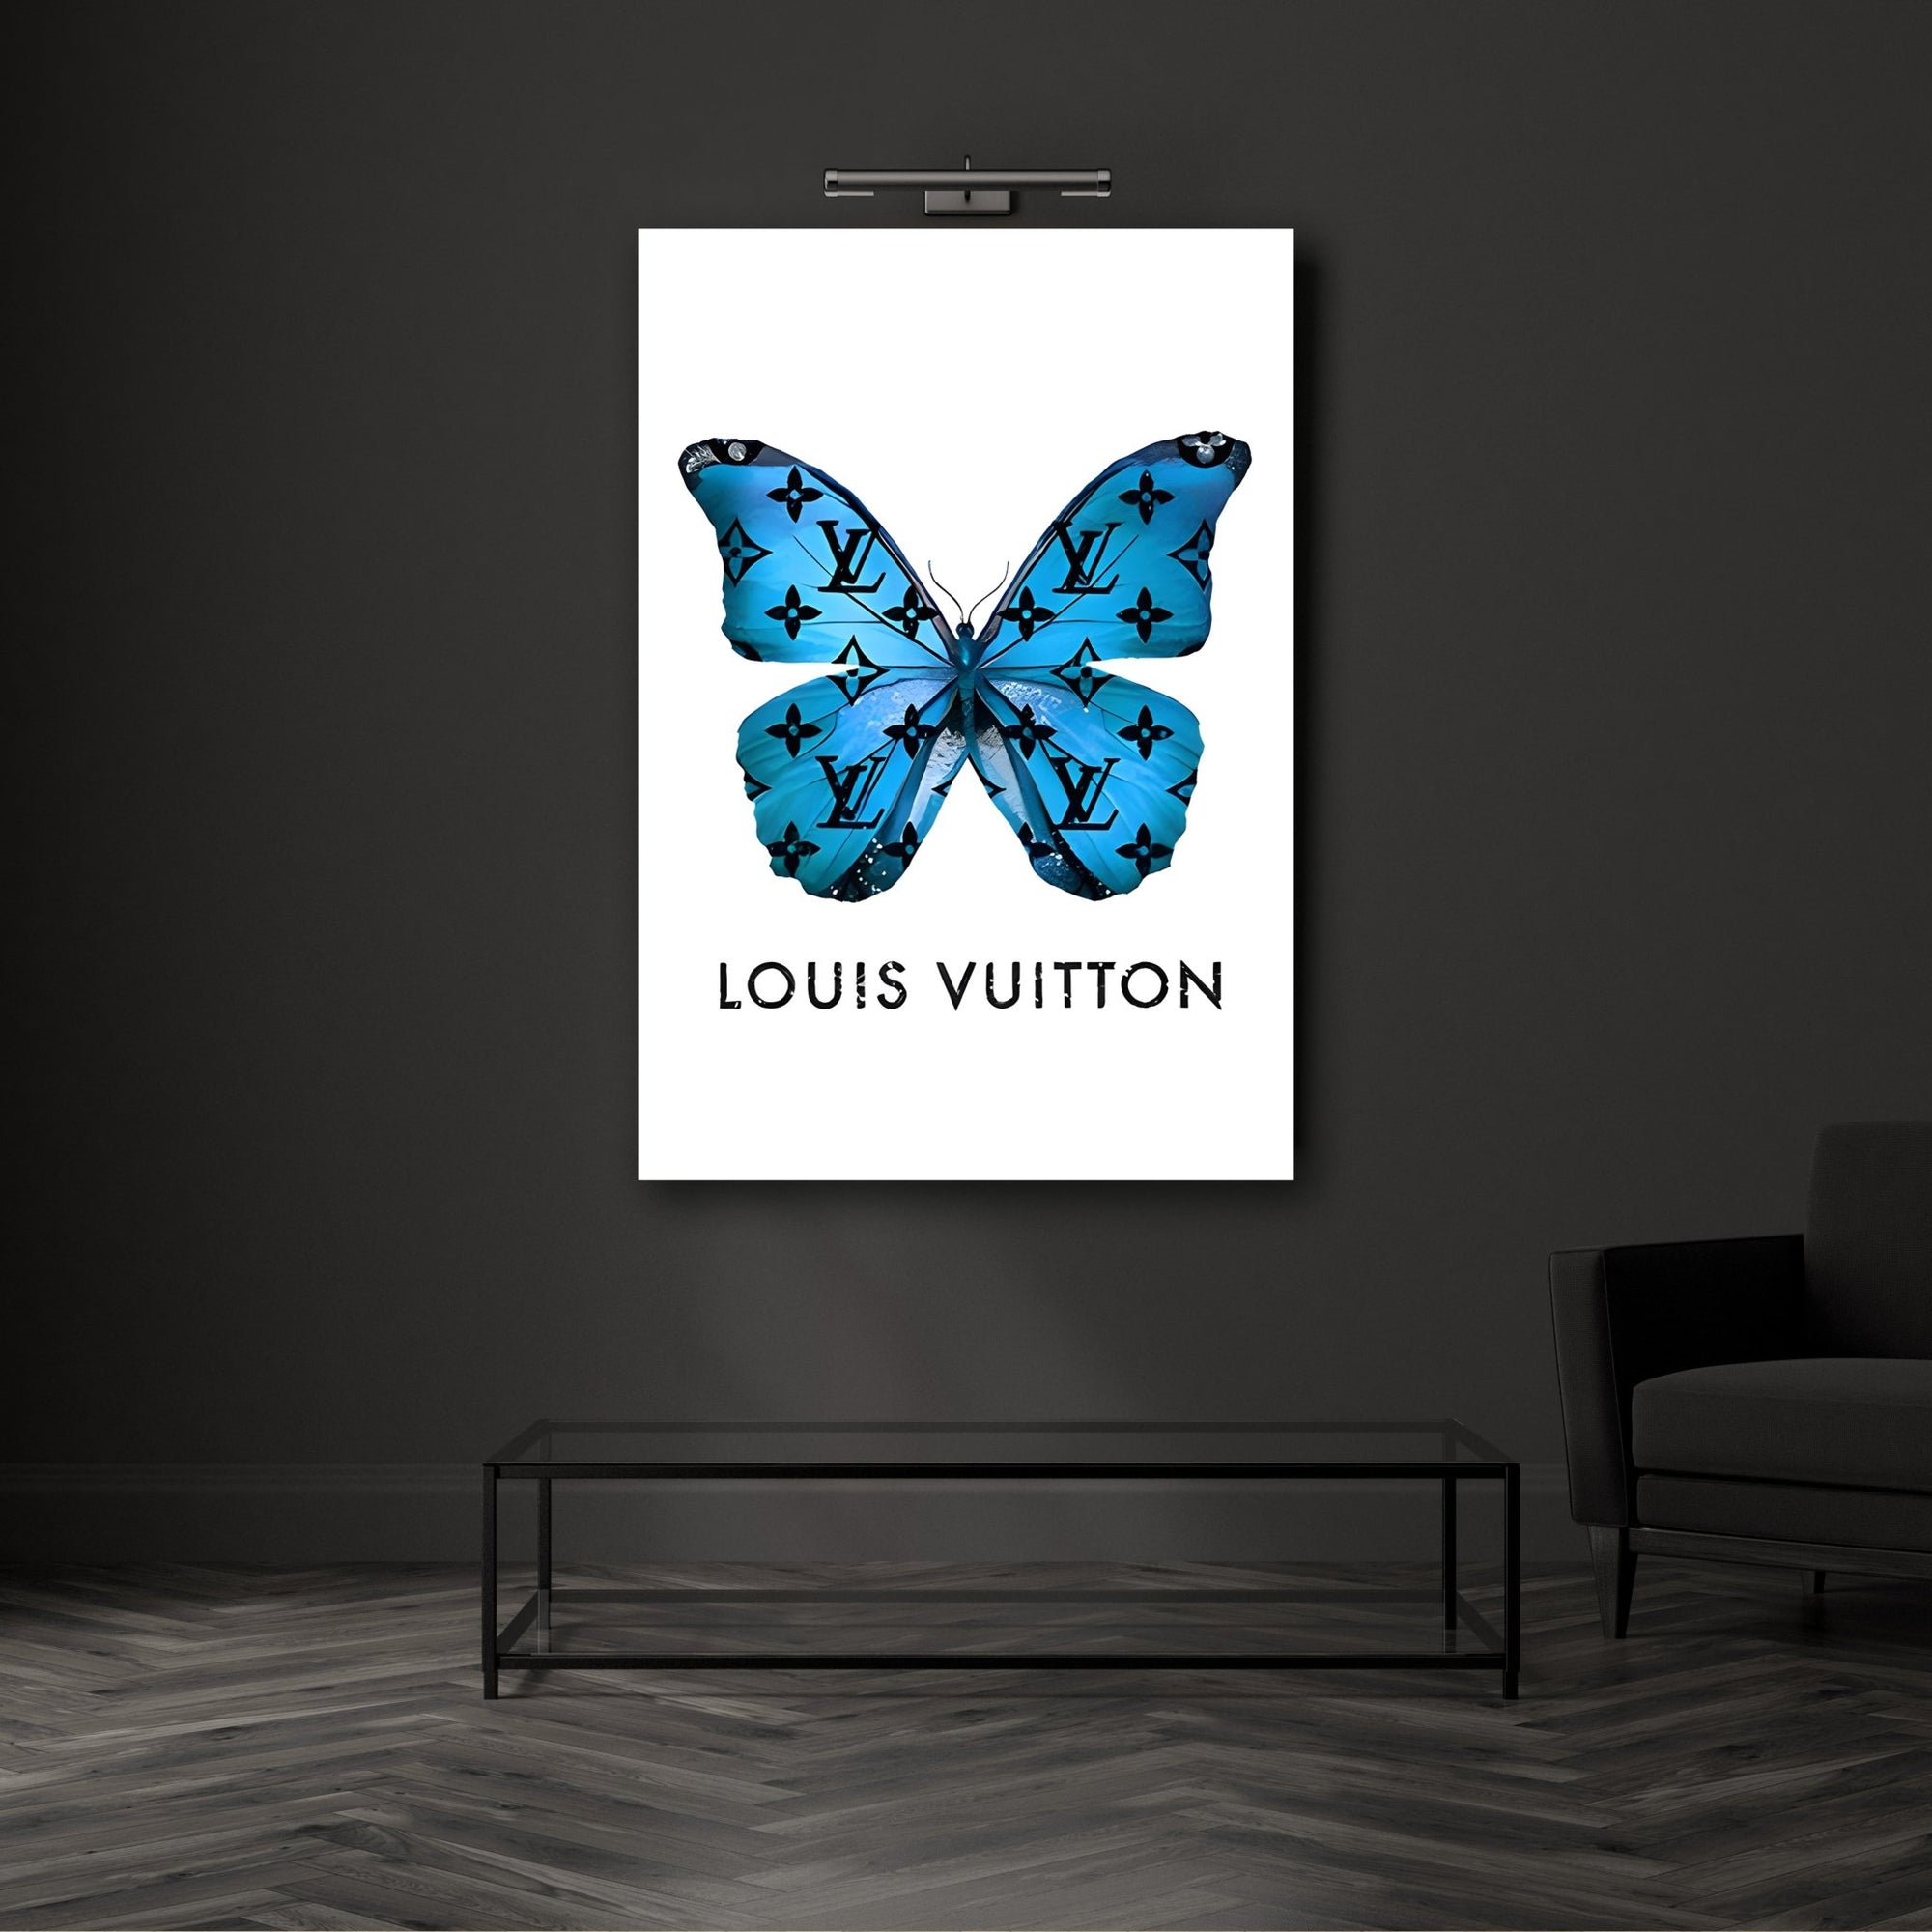 Tableau Louis Vuitton ❤️ lèvres rouges d'or impression sur toile lv3